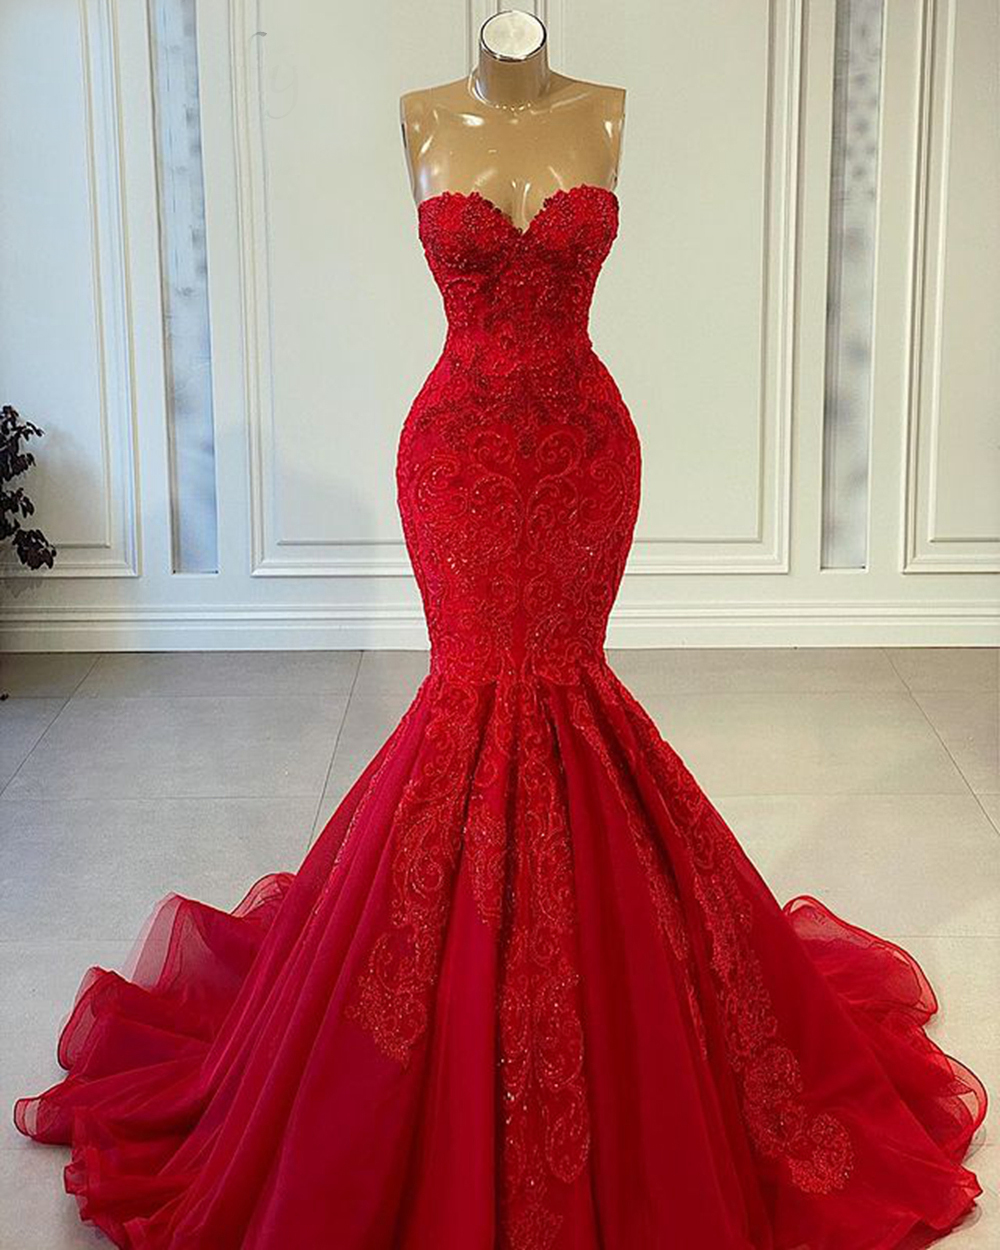 Red Prom Dresses, 2022 Prom Dresses, Mermaid Prom Dresses, Sweetheart Neckline Prom Dresses, Lace Prom Dresses, Red Evening Dresses, Mermaid